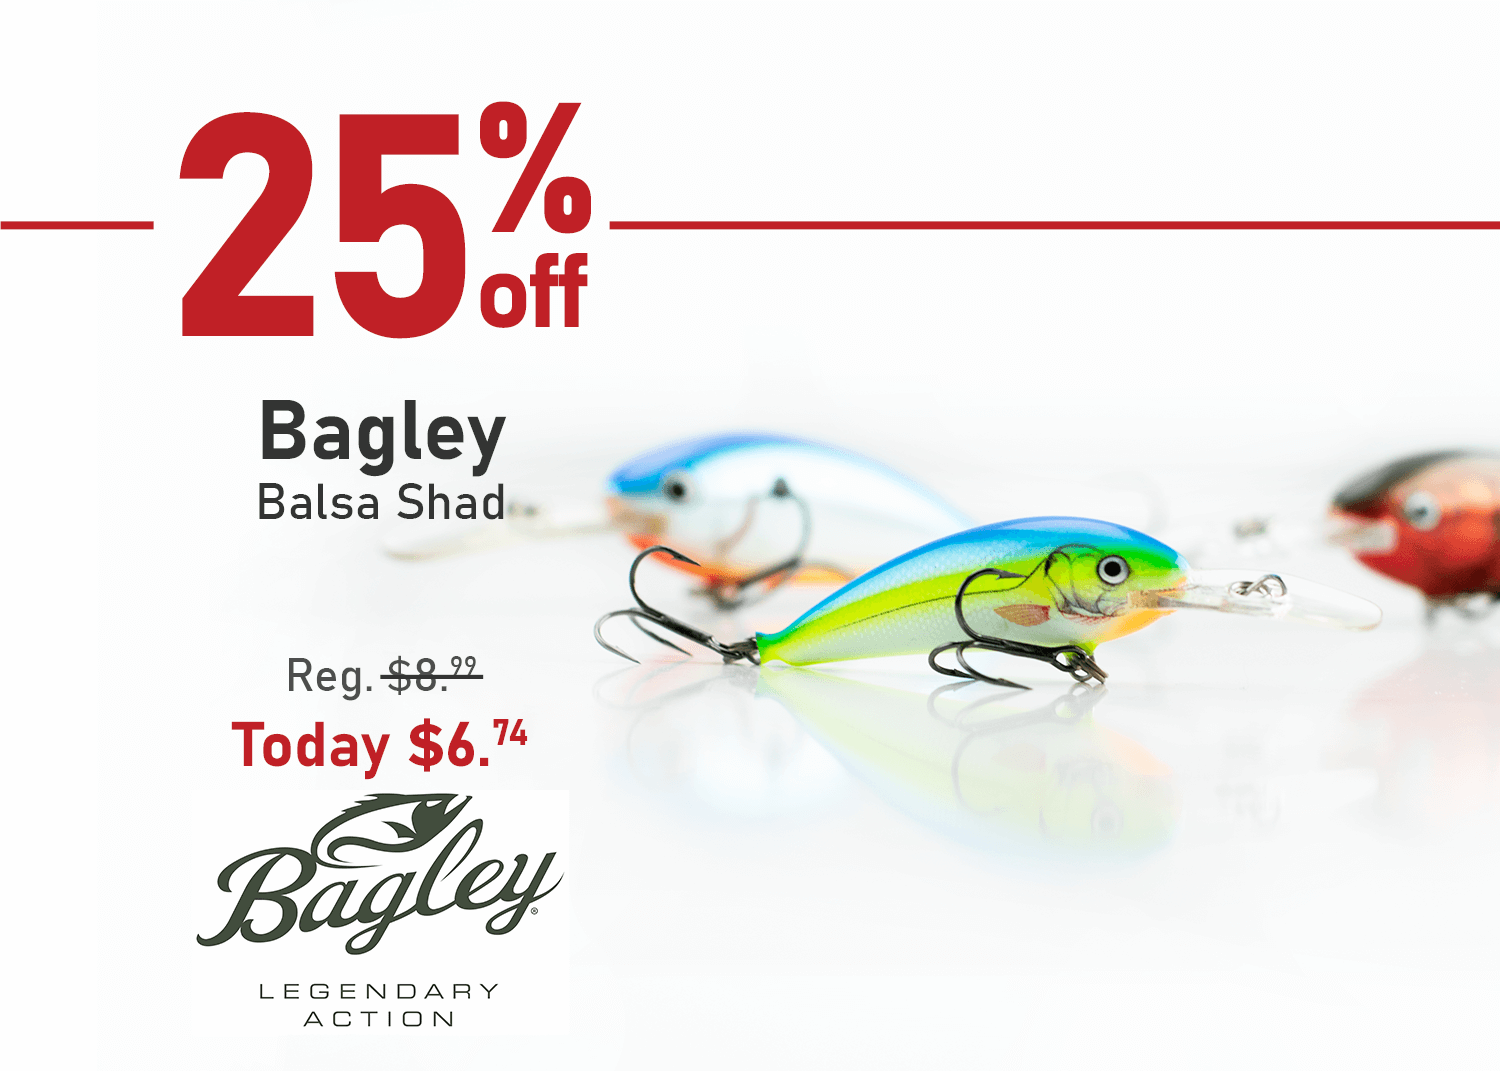 Save 25% on the Bagley Balsa Shad